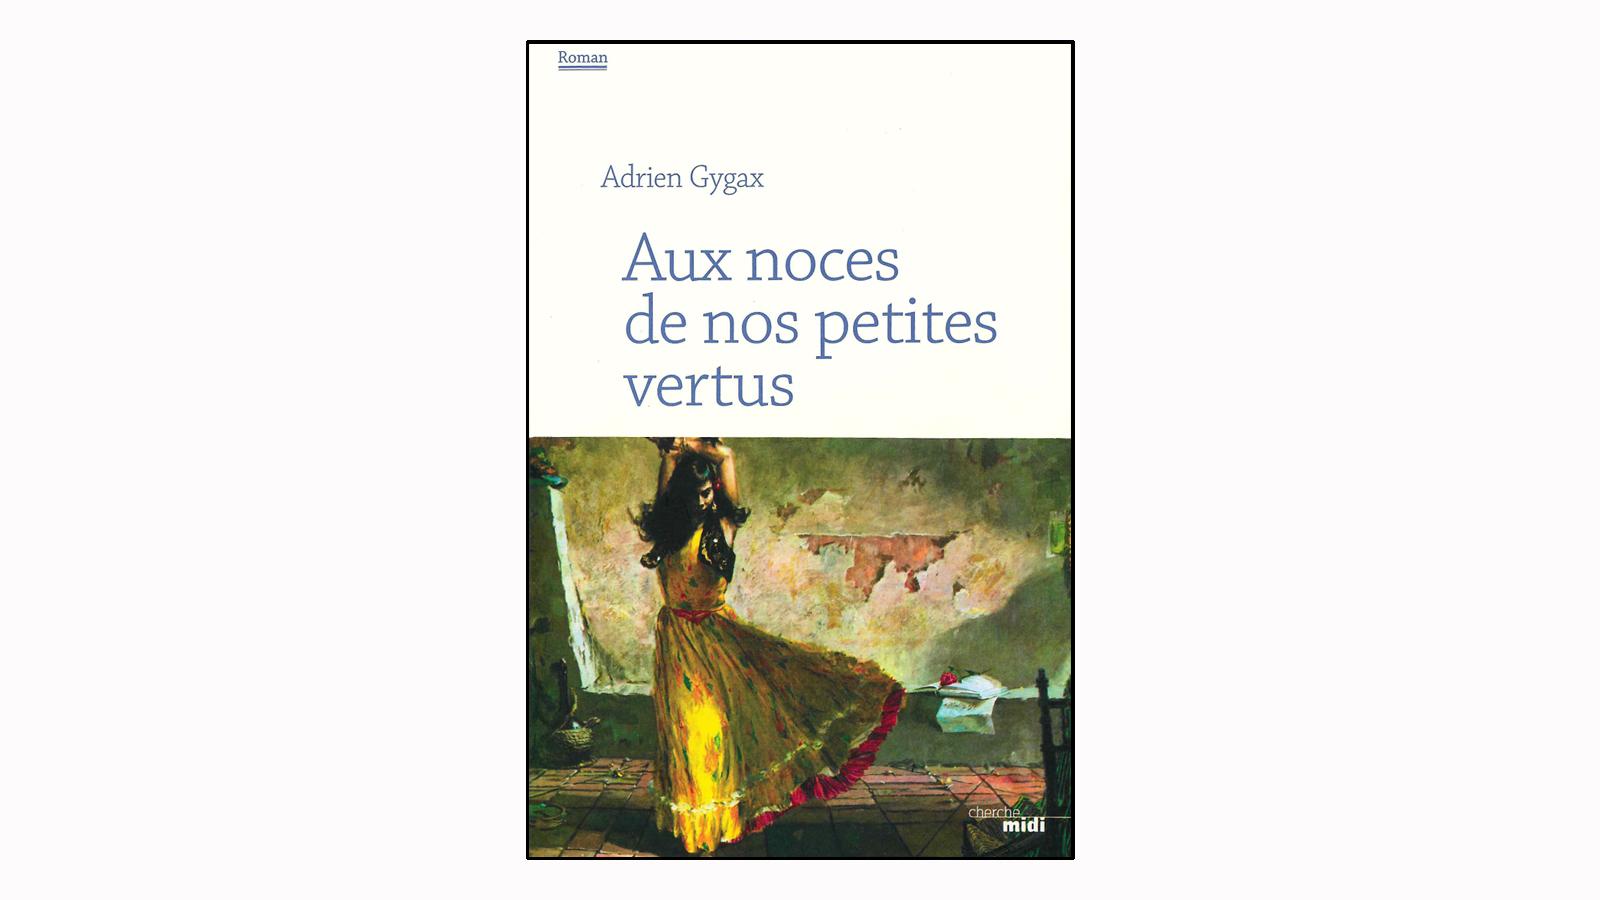 La couverture du livre "Aux noces de nos petites vertus" d'Adrien Gygax. [Cherche midi]